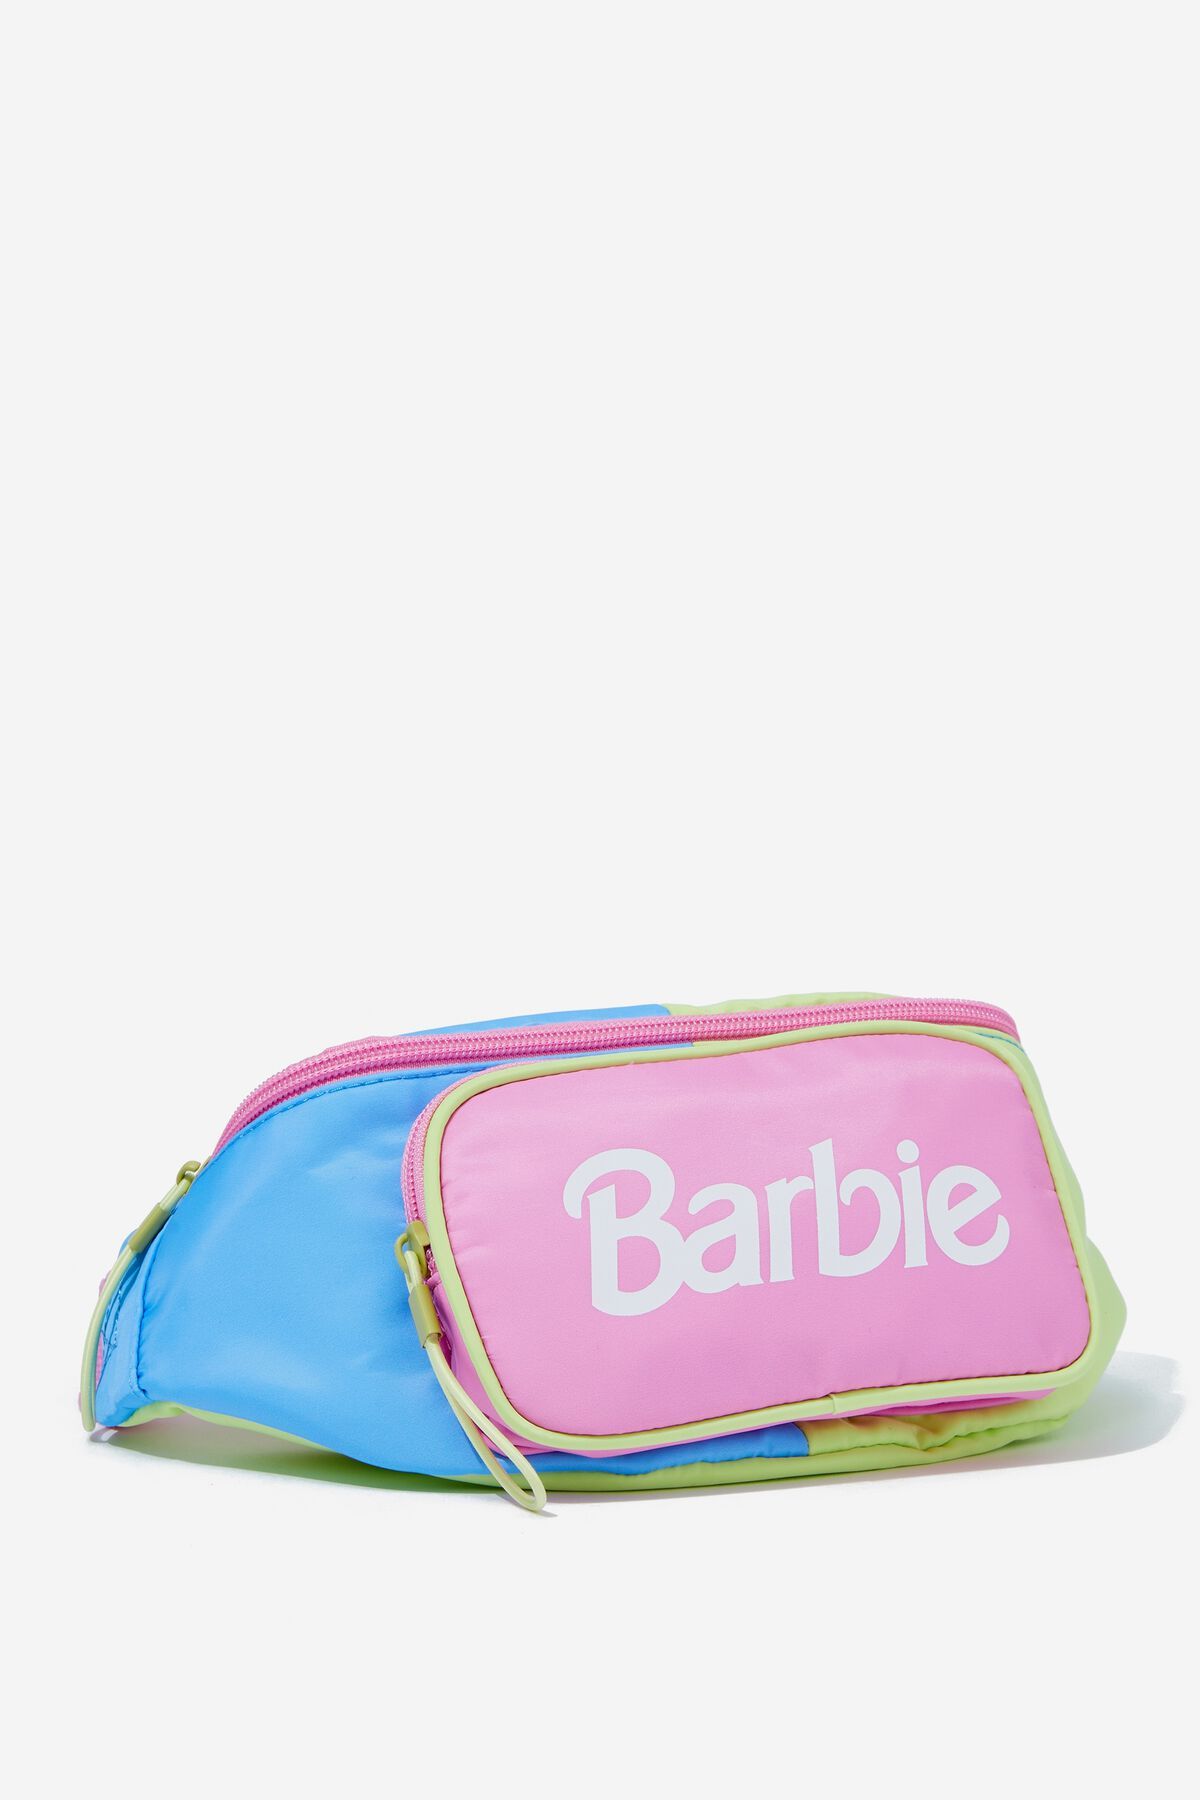 Barbie Belt Bag | Cotton On (US)